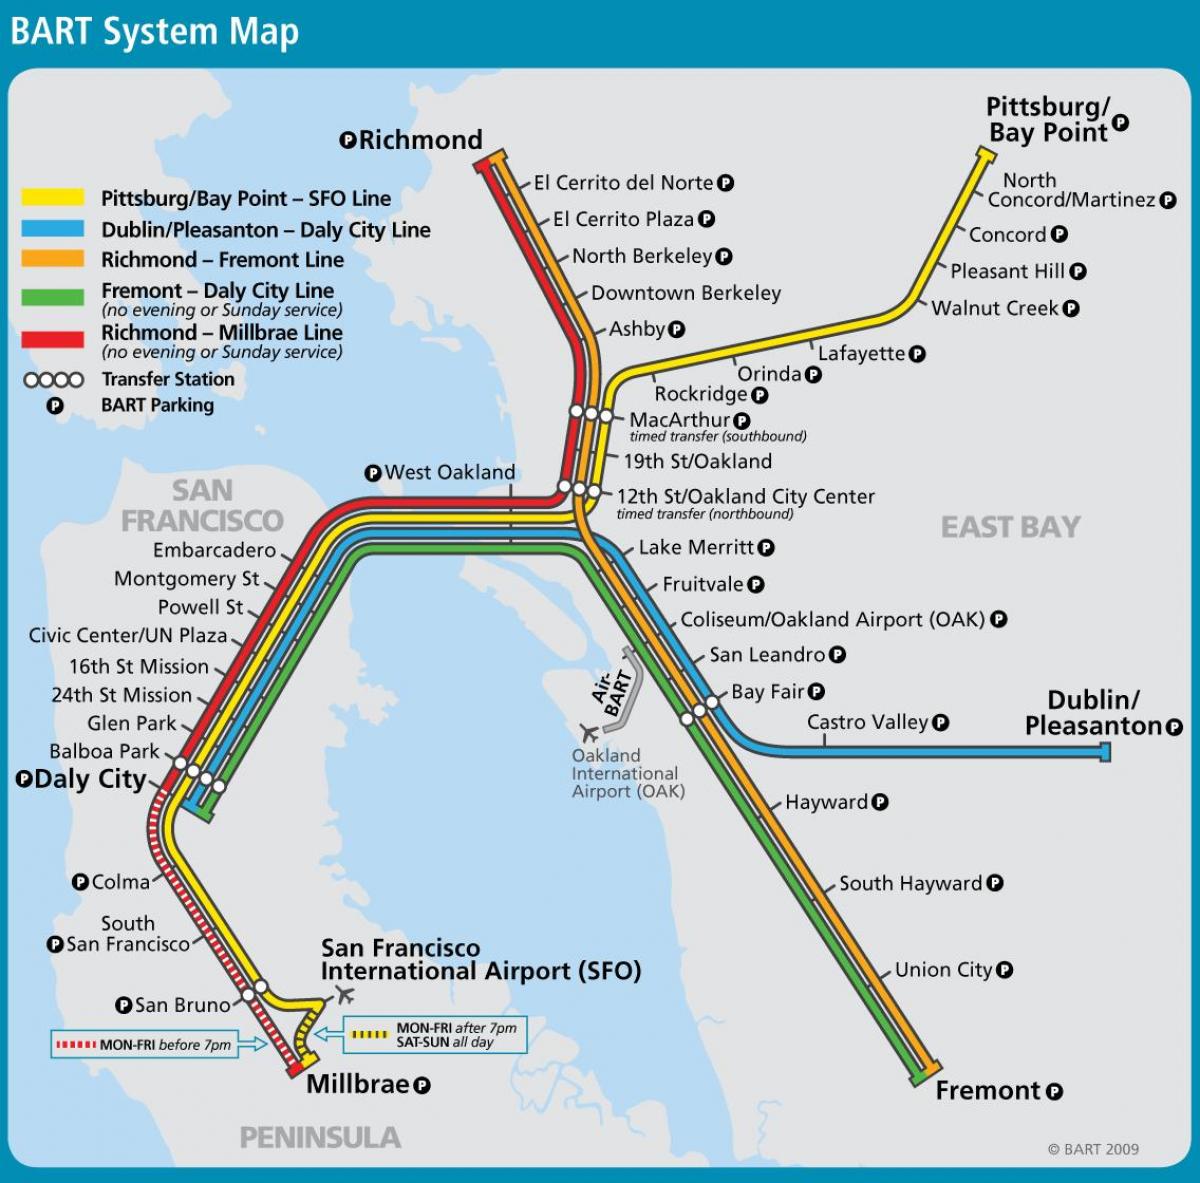 सैन फ्रांसिस्को bart प्रणाली नक्शा